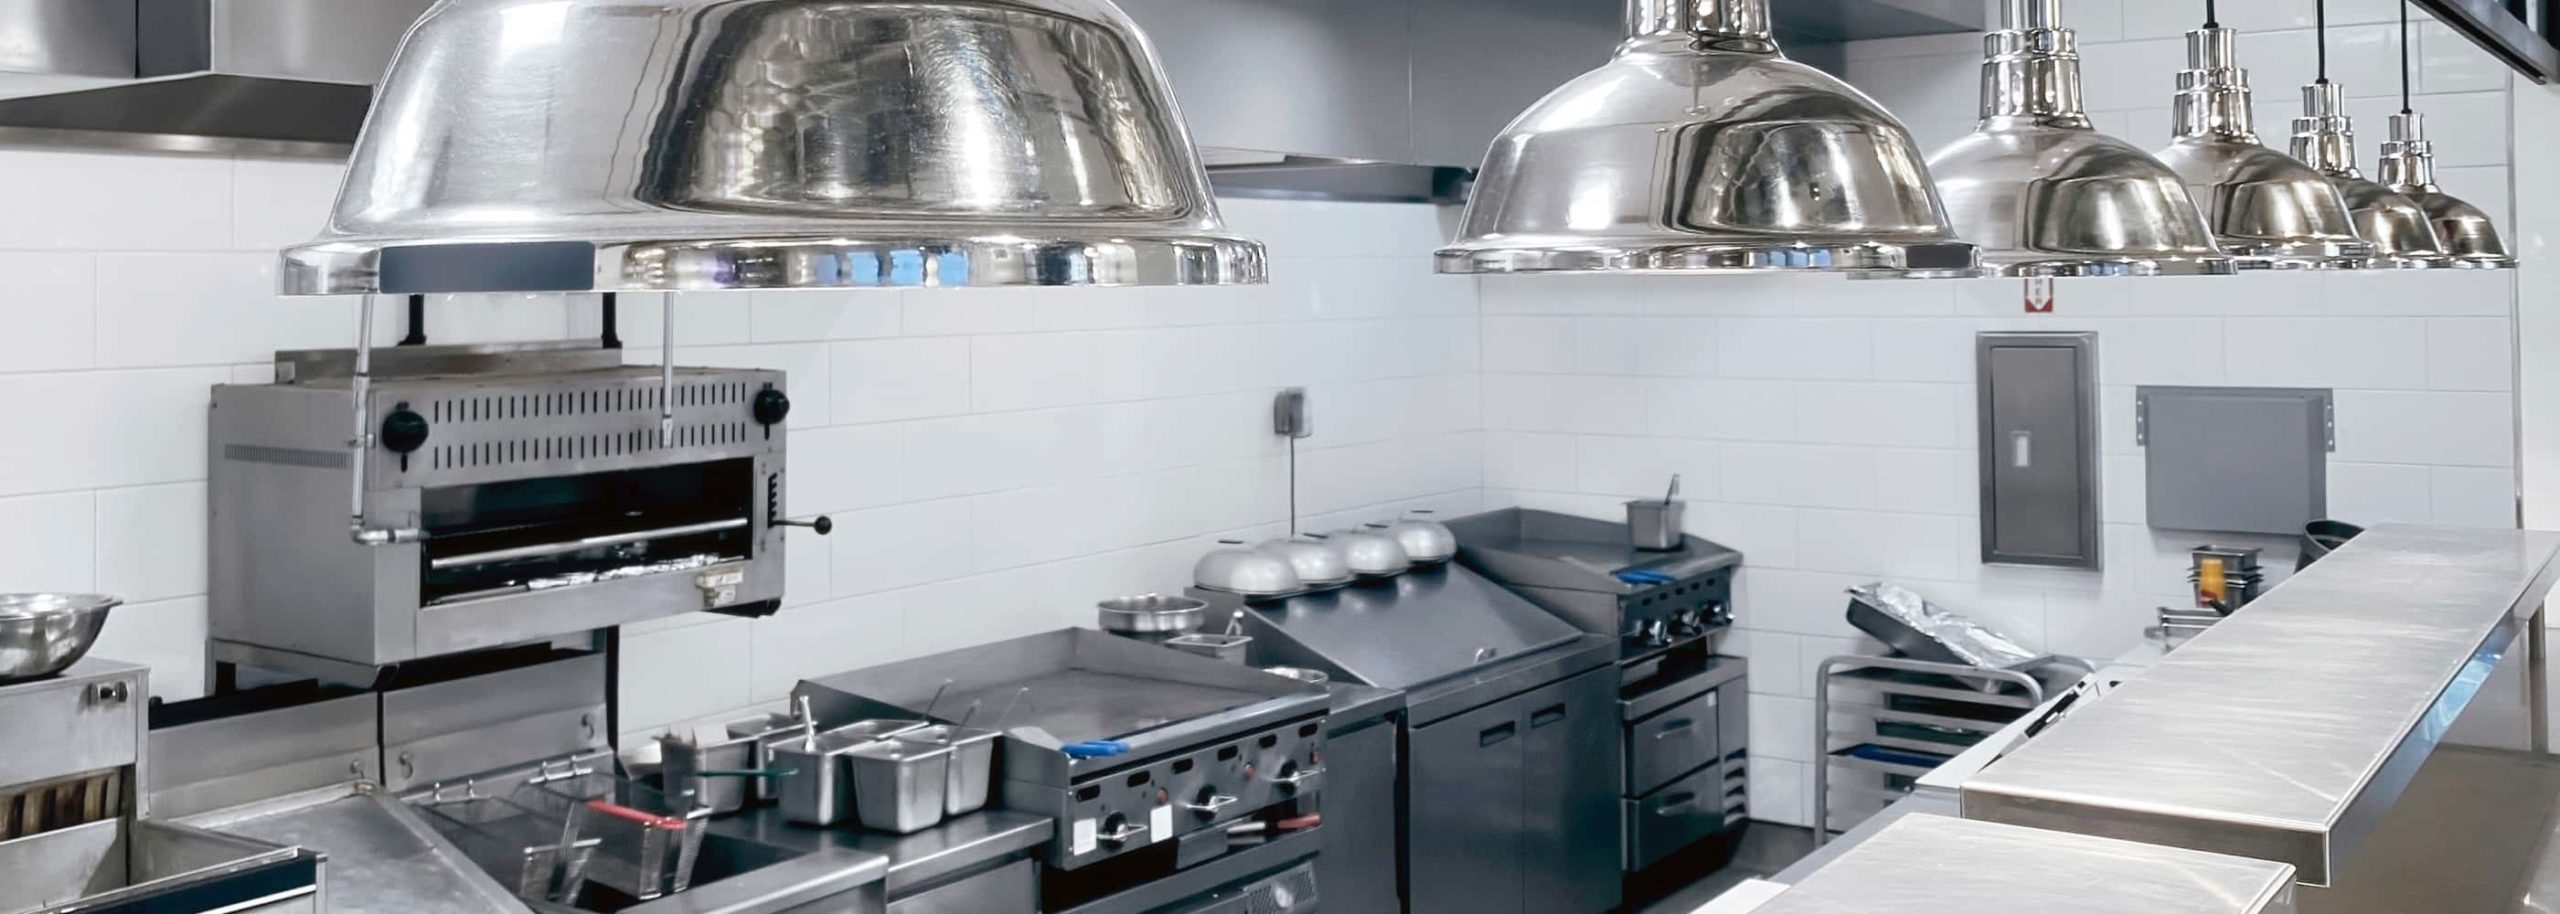 stainless steel island kitchen equipment